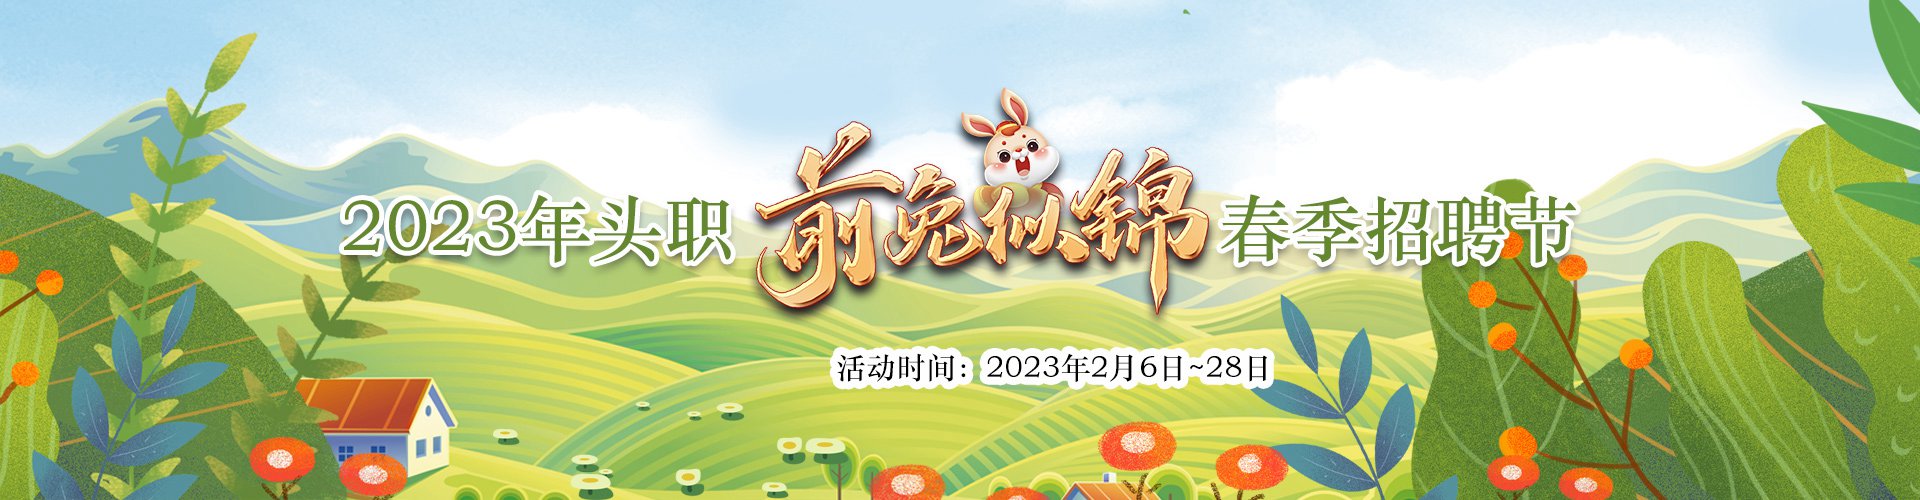 2023年头职“前兔似锦”春季招聘节